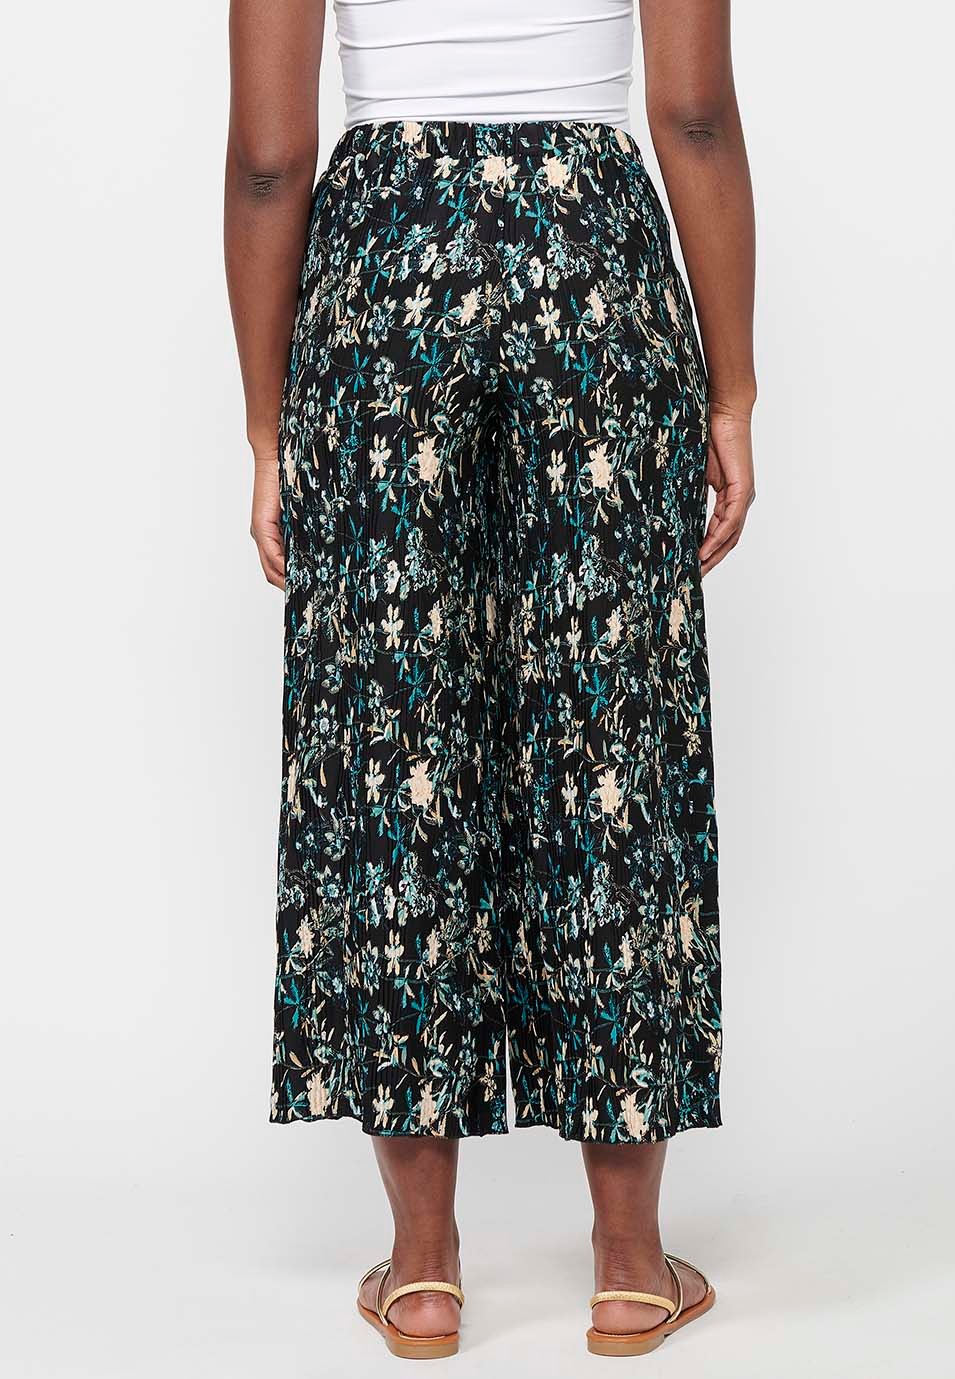 Pantalon long et large à taille caoutchoutée pour femme, imprimé floral multicolore